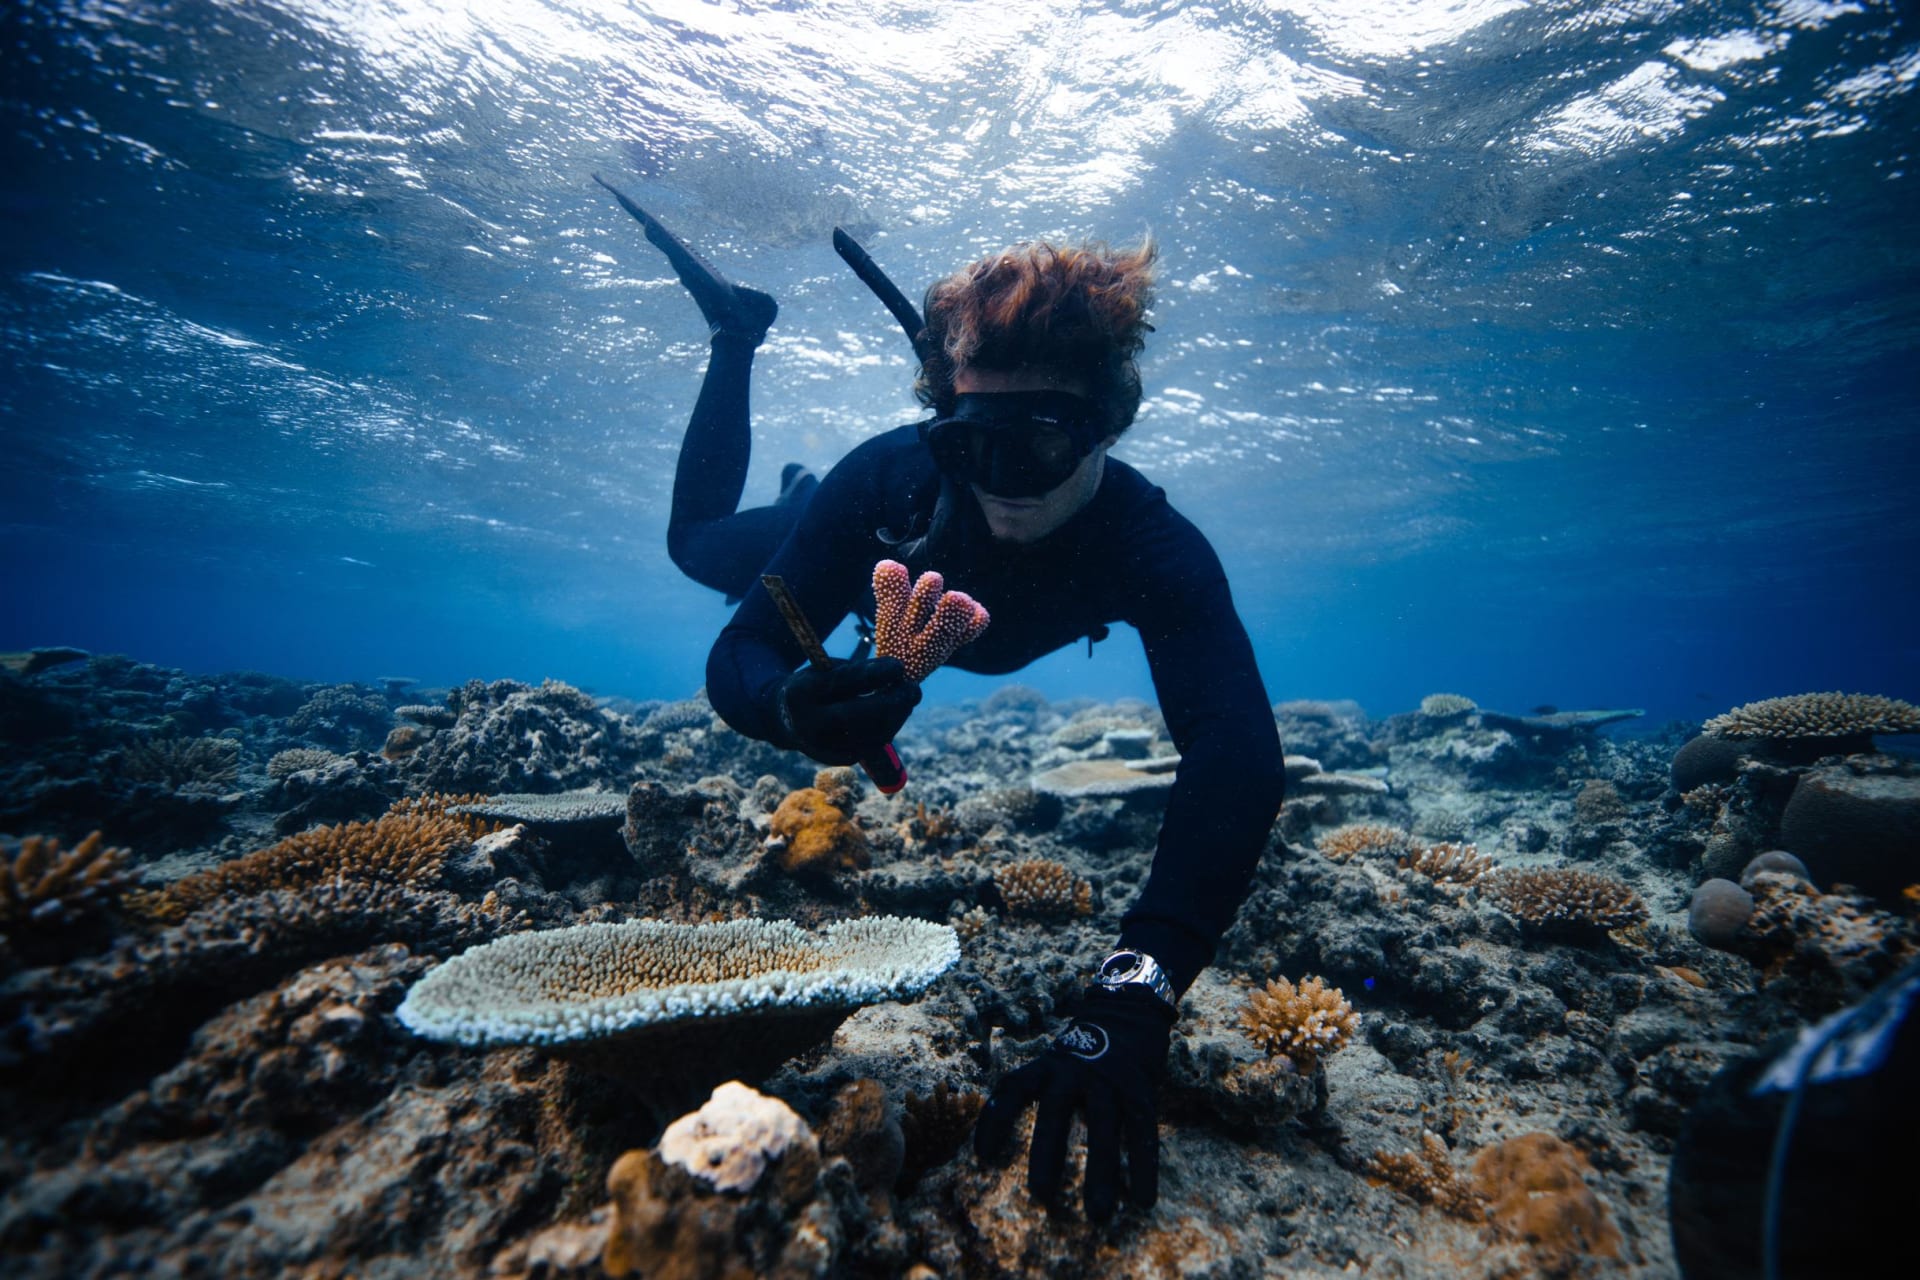 بمساعدة من ممثل "أكوامان".. هذا الناشط البيئي في مهمة لإنقاذ الشعاب المرجانية في العالم